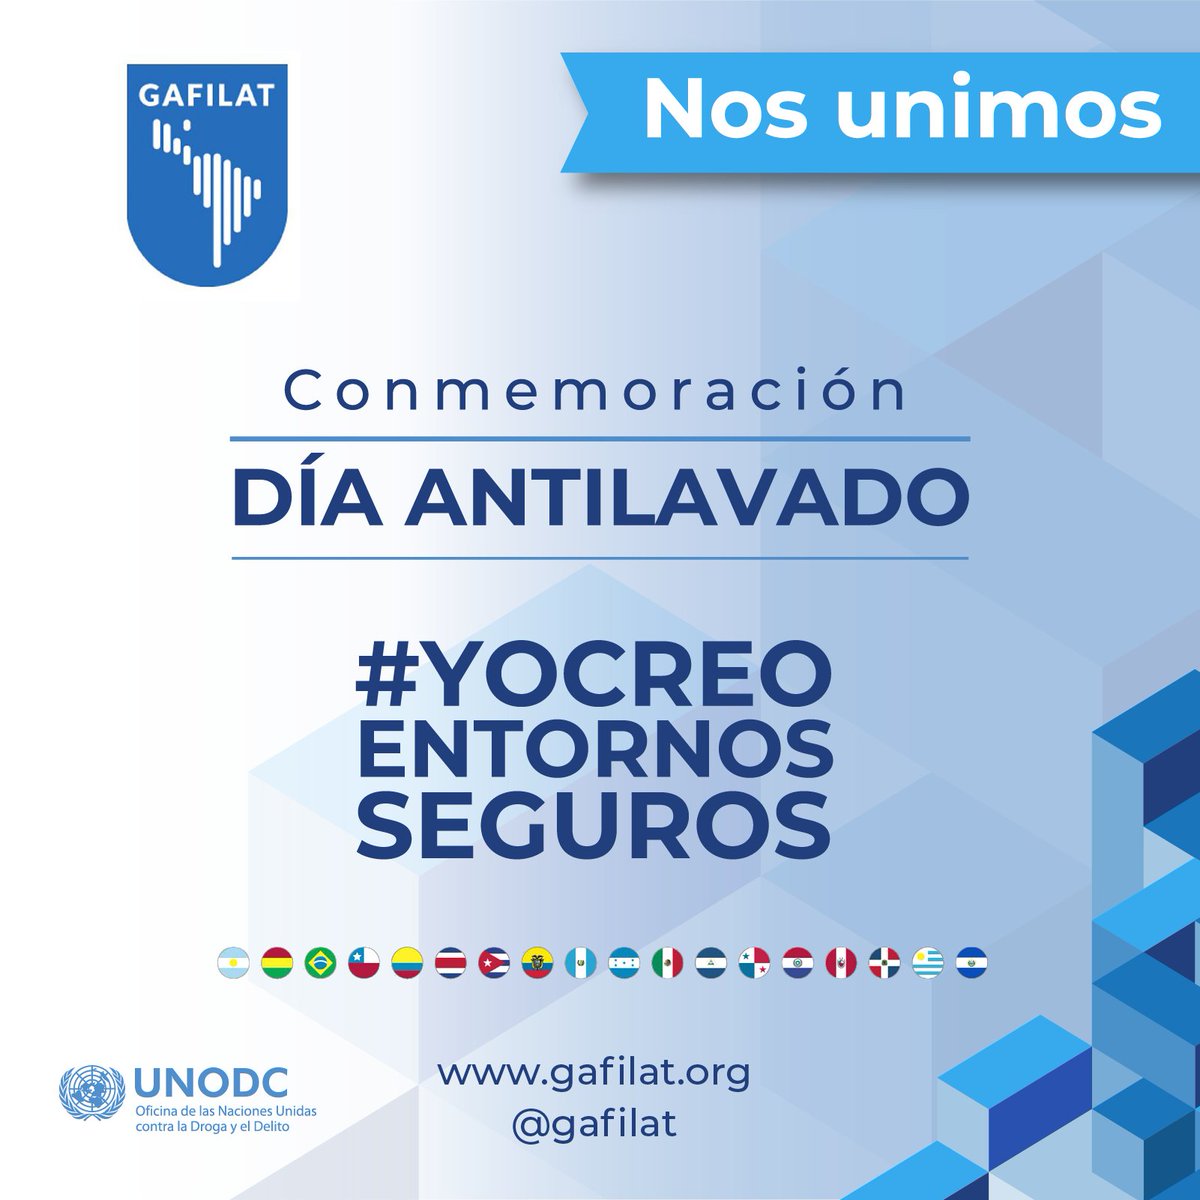 El 29 de octubre se celebra el Día Nacional de la Prevención del Lavado de Activos. El GAFILAT y sus países miembros redoblan sus esfuerzos y compromiso para continuar trabajando en la prevención de este flagelo. @UNODCROCOL